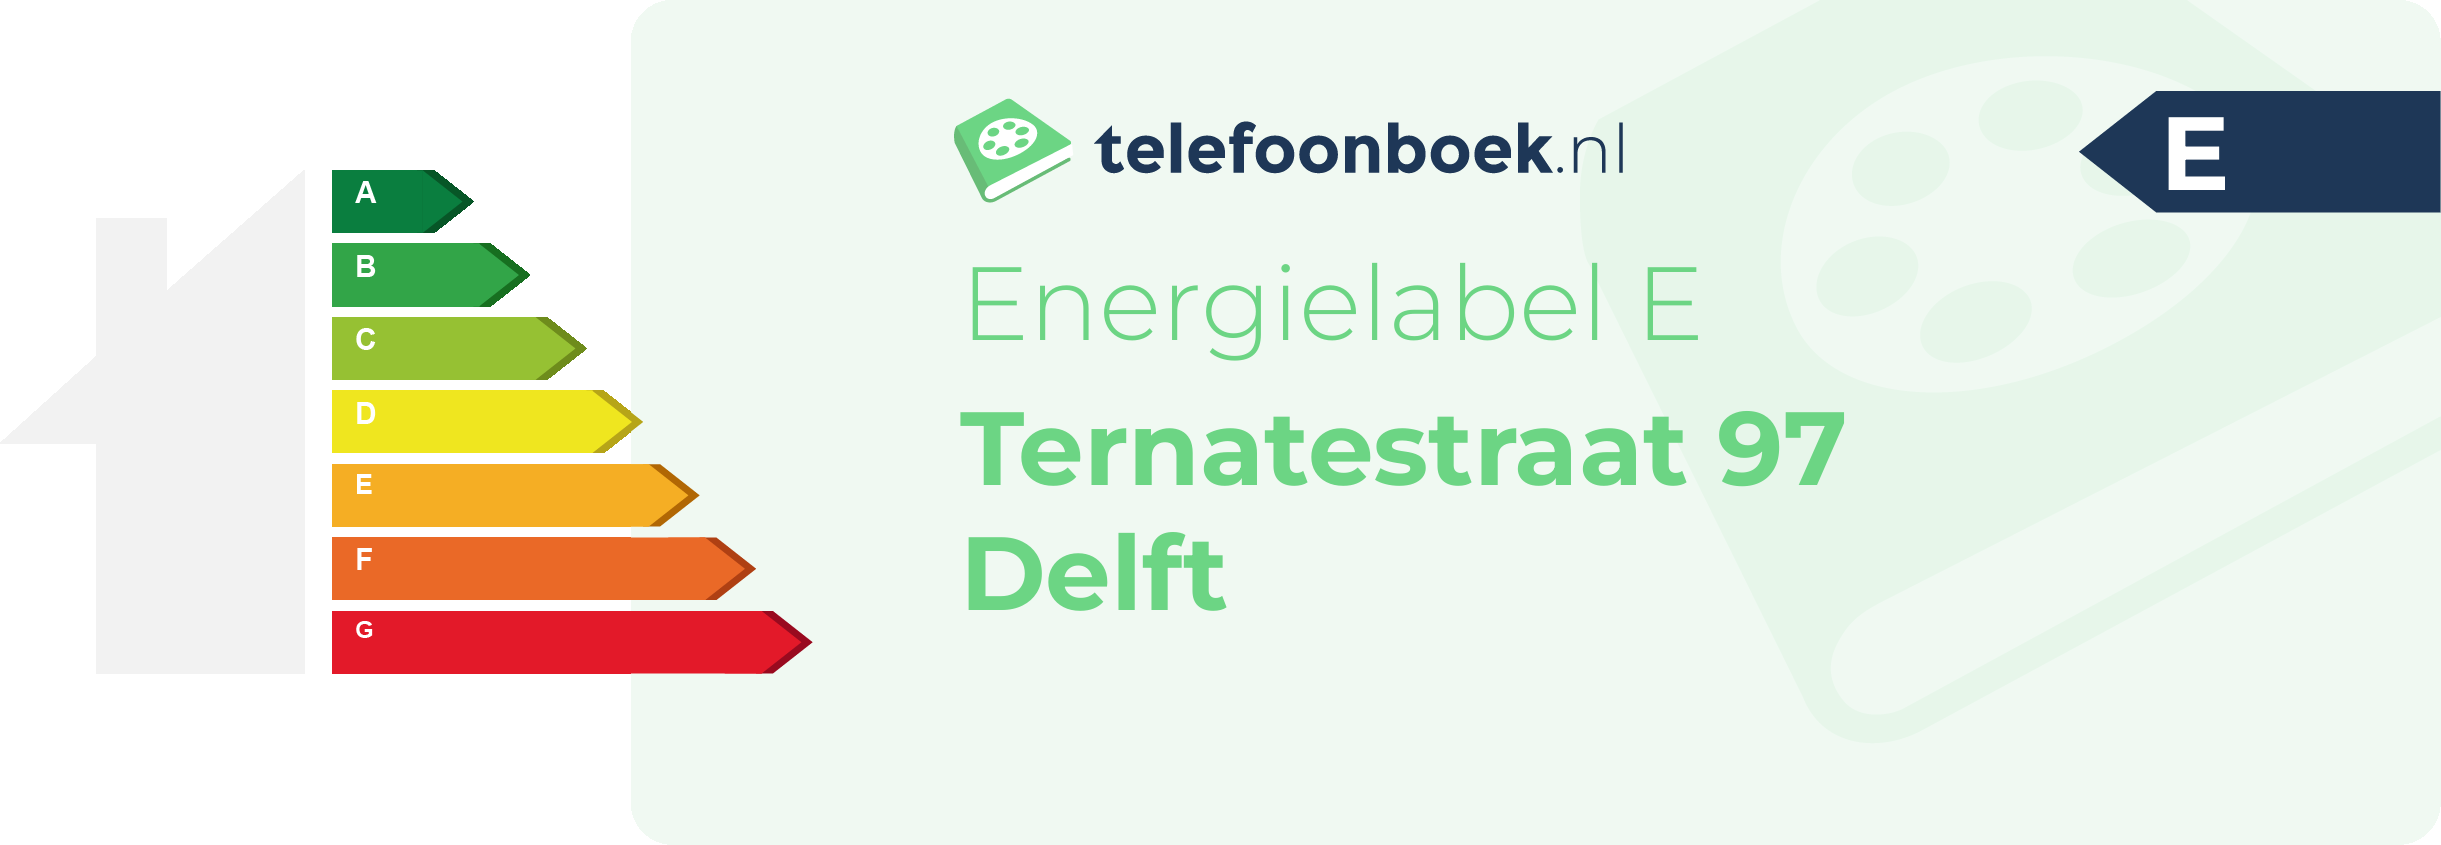 Energielabel Ternatestraat 97 Delft